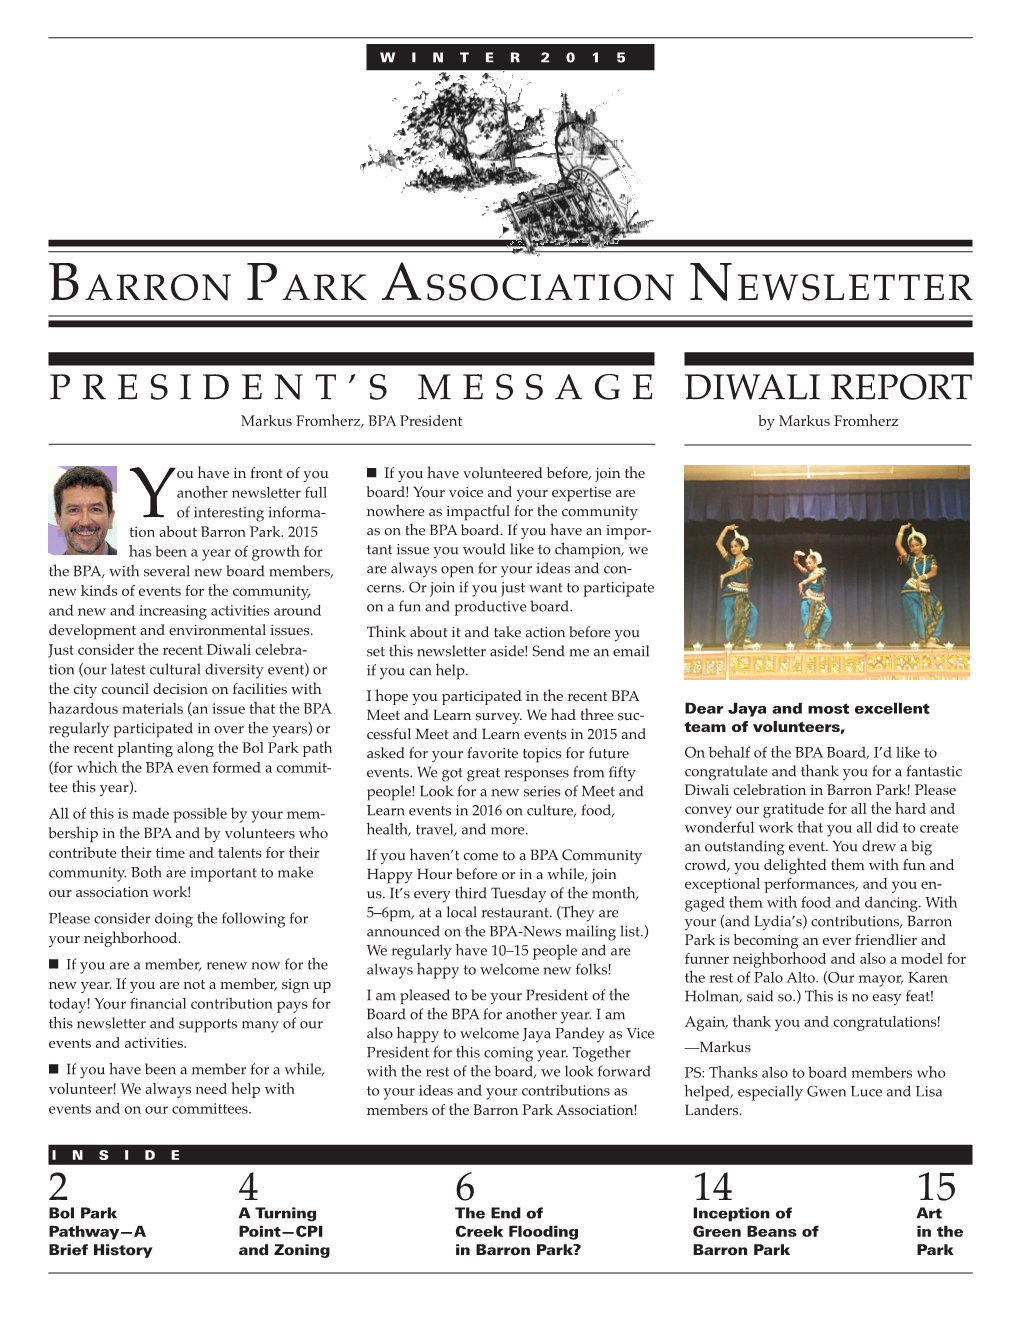 Barron Park Association Newsletter